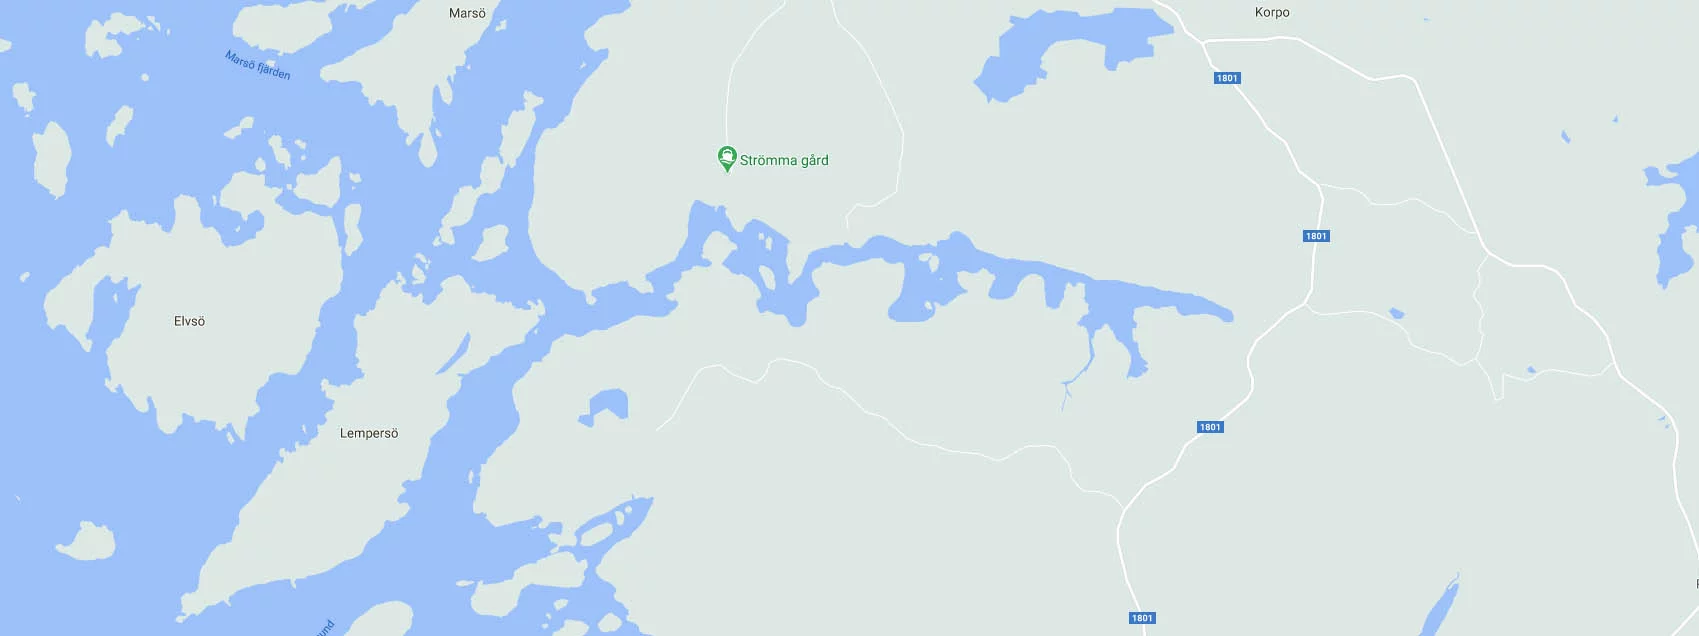 Strömma Gård båthamn långviken korpo